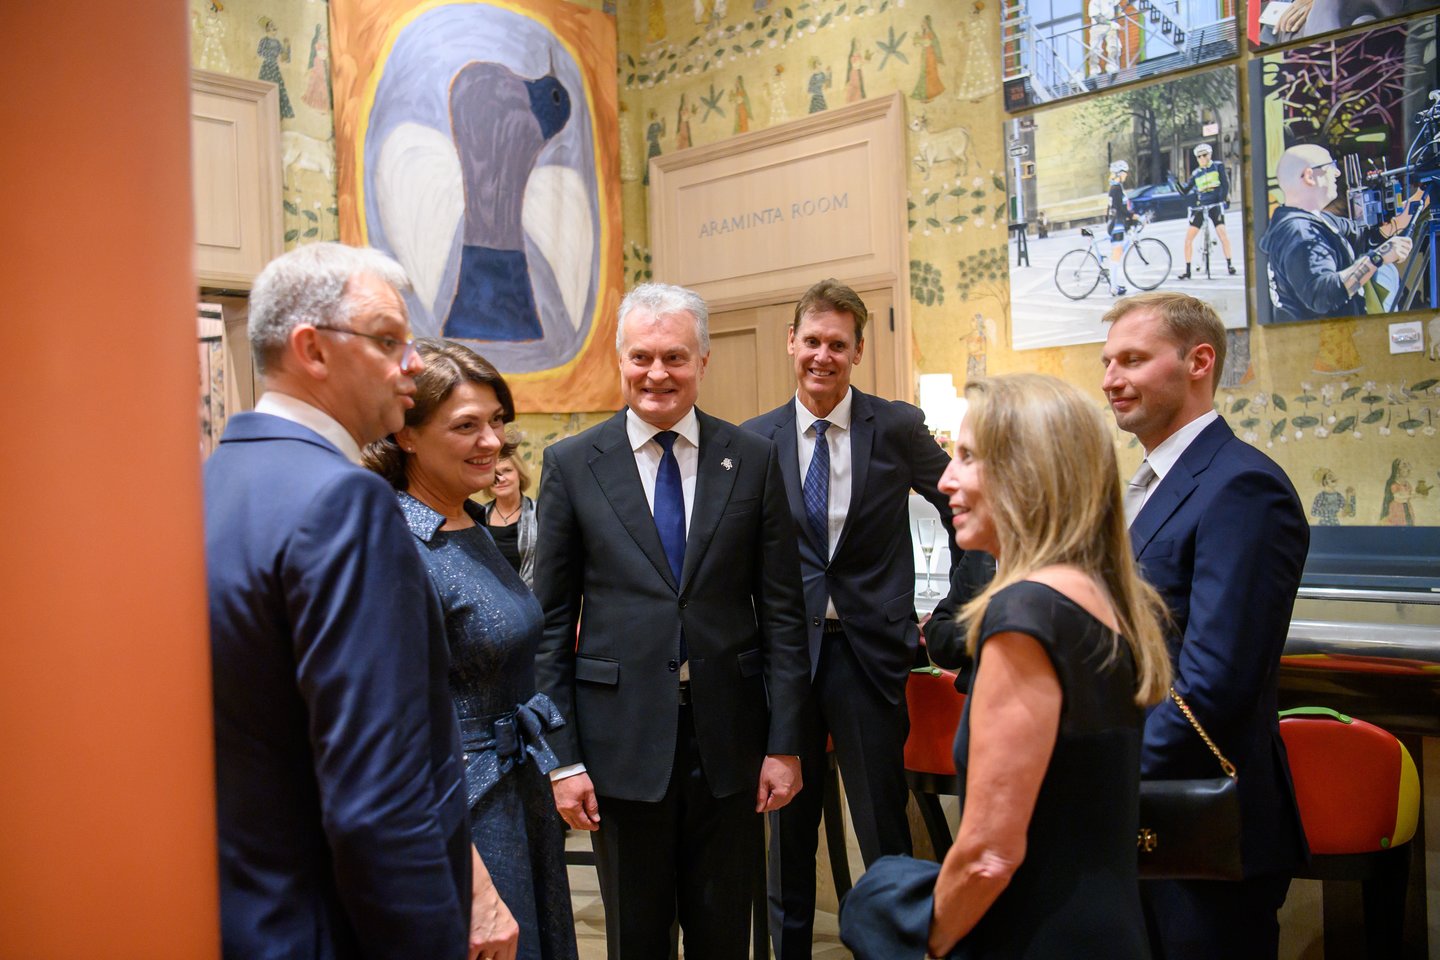  Lietuvos prezidentas Gitanas Nausėda ir pirmoji ponia Diana Nausėdienė dalyvavo Niujorke surengtoje paramos Ukrainai vakarienėje.  <br>Prezidento kanceliarijos nuotr.